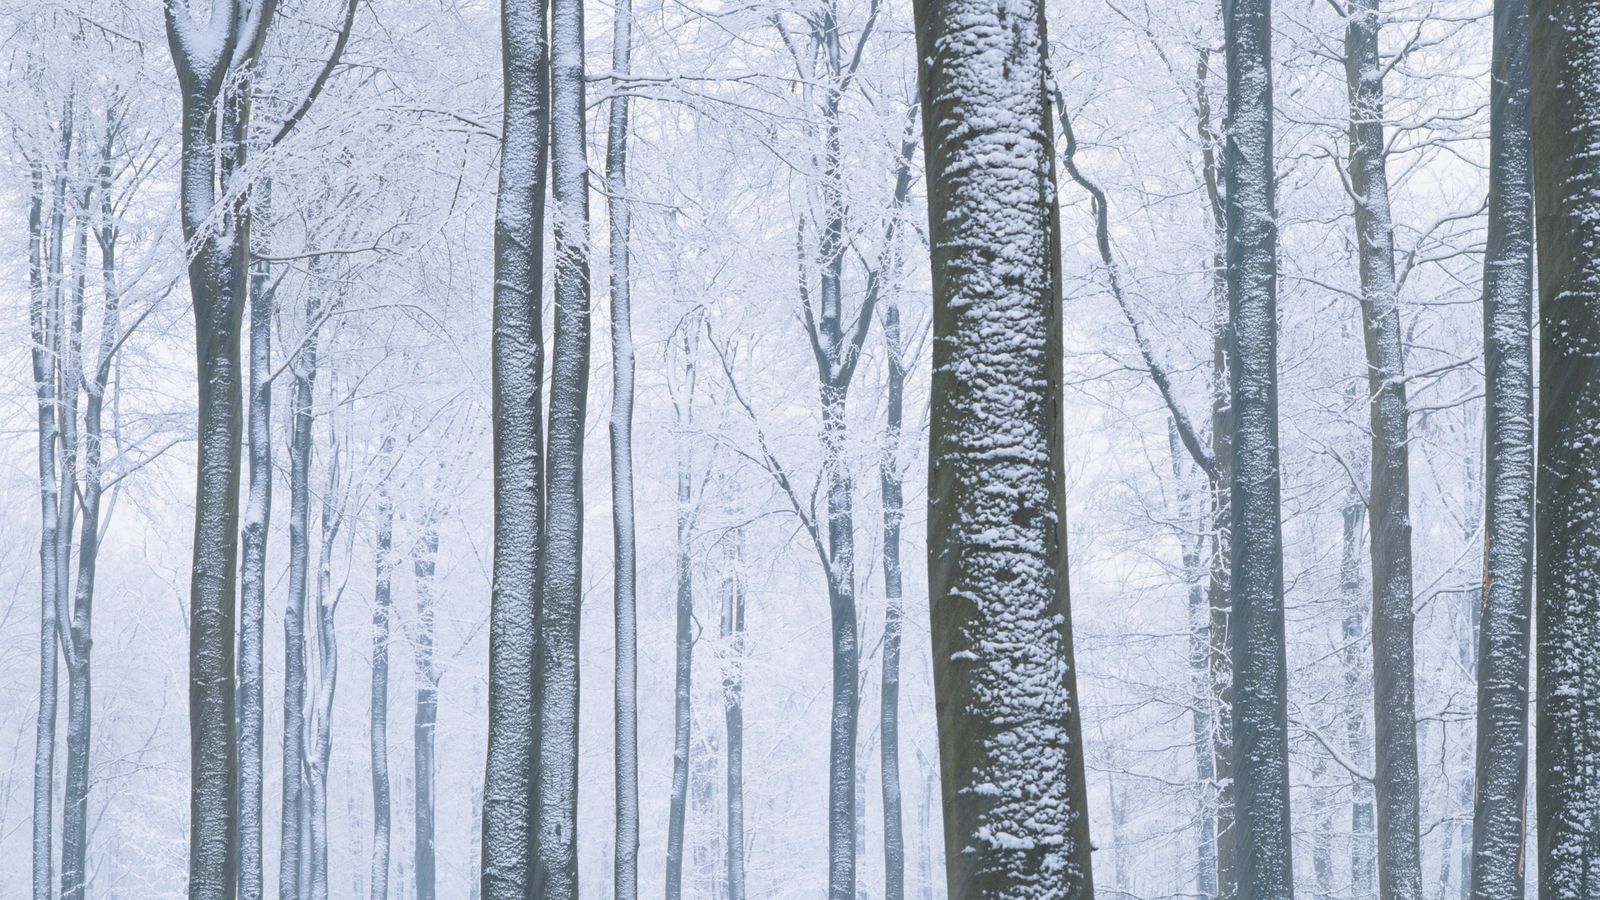 Галерея фонов Яндекс зима